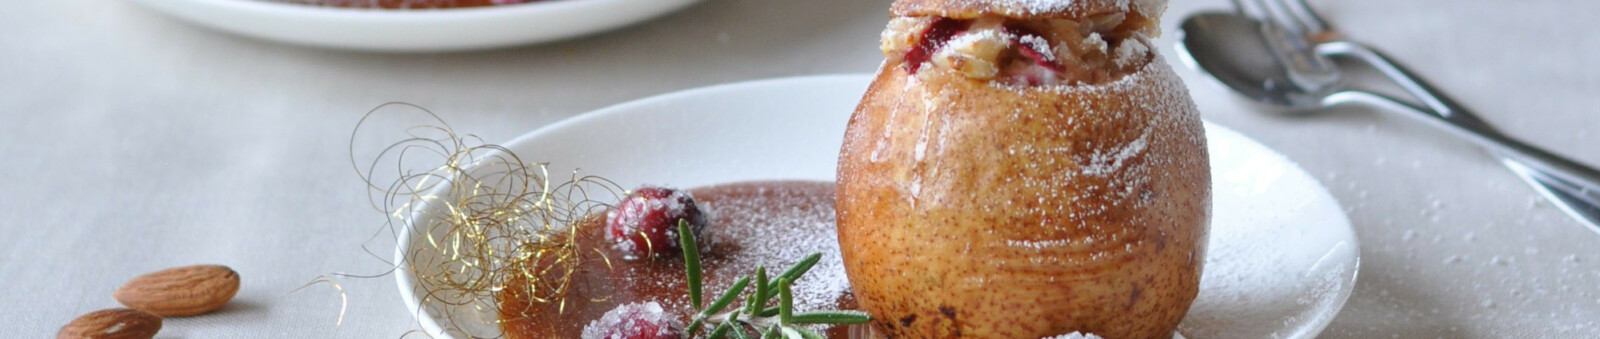 Rezept Bratbirne mit Marzipan-Cranberry-Füllung und Karamellsauce